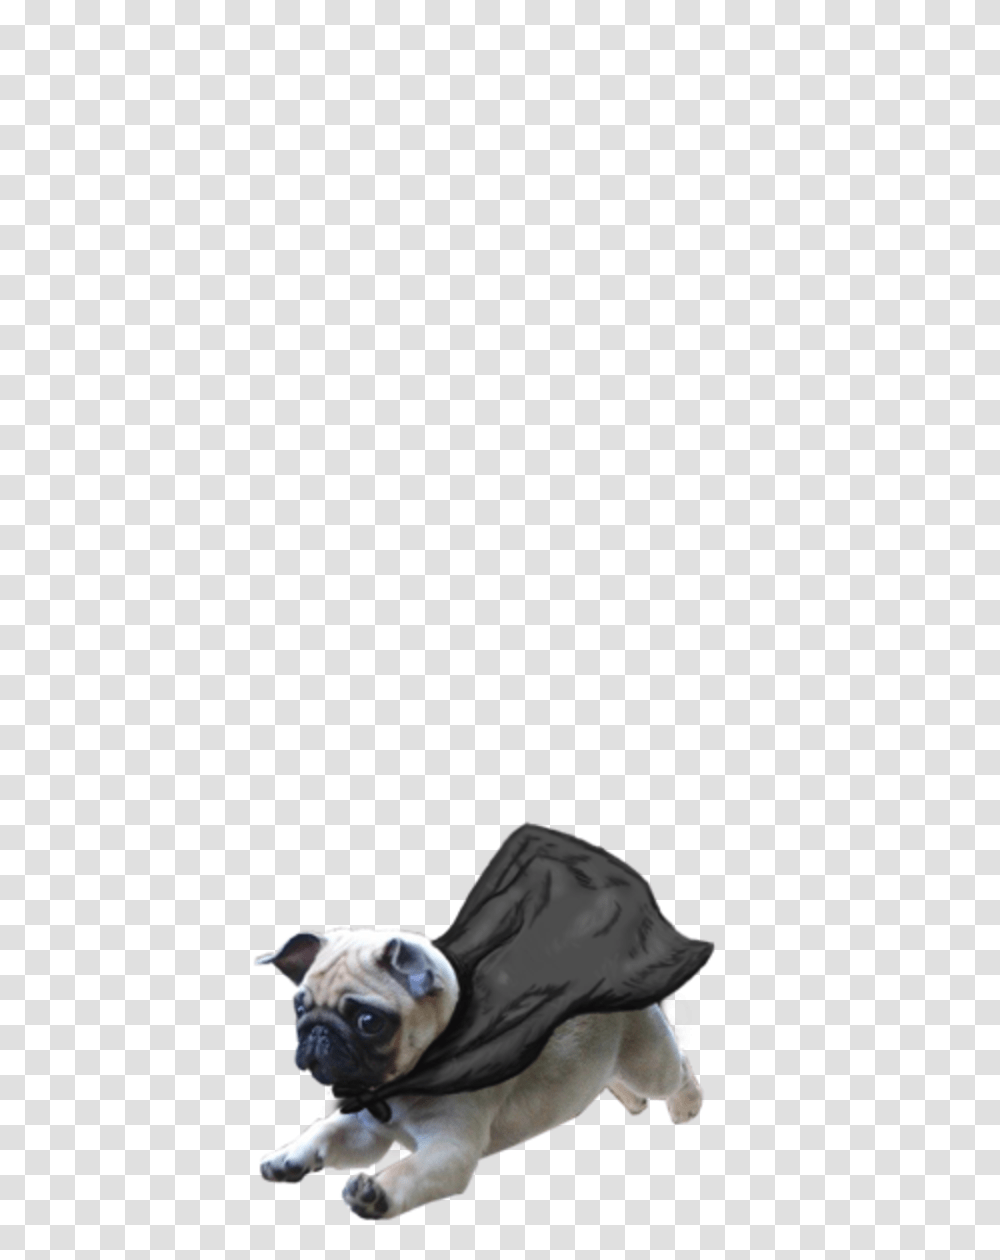 Thug Life Pug Image Background Dog Images, Cushion, Clothing, Machine, Wheel Transparent Png